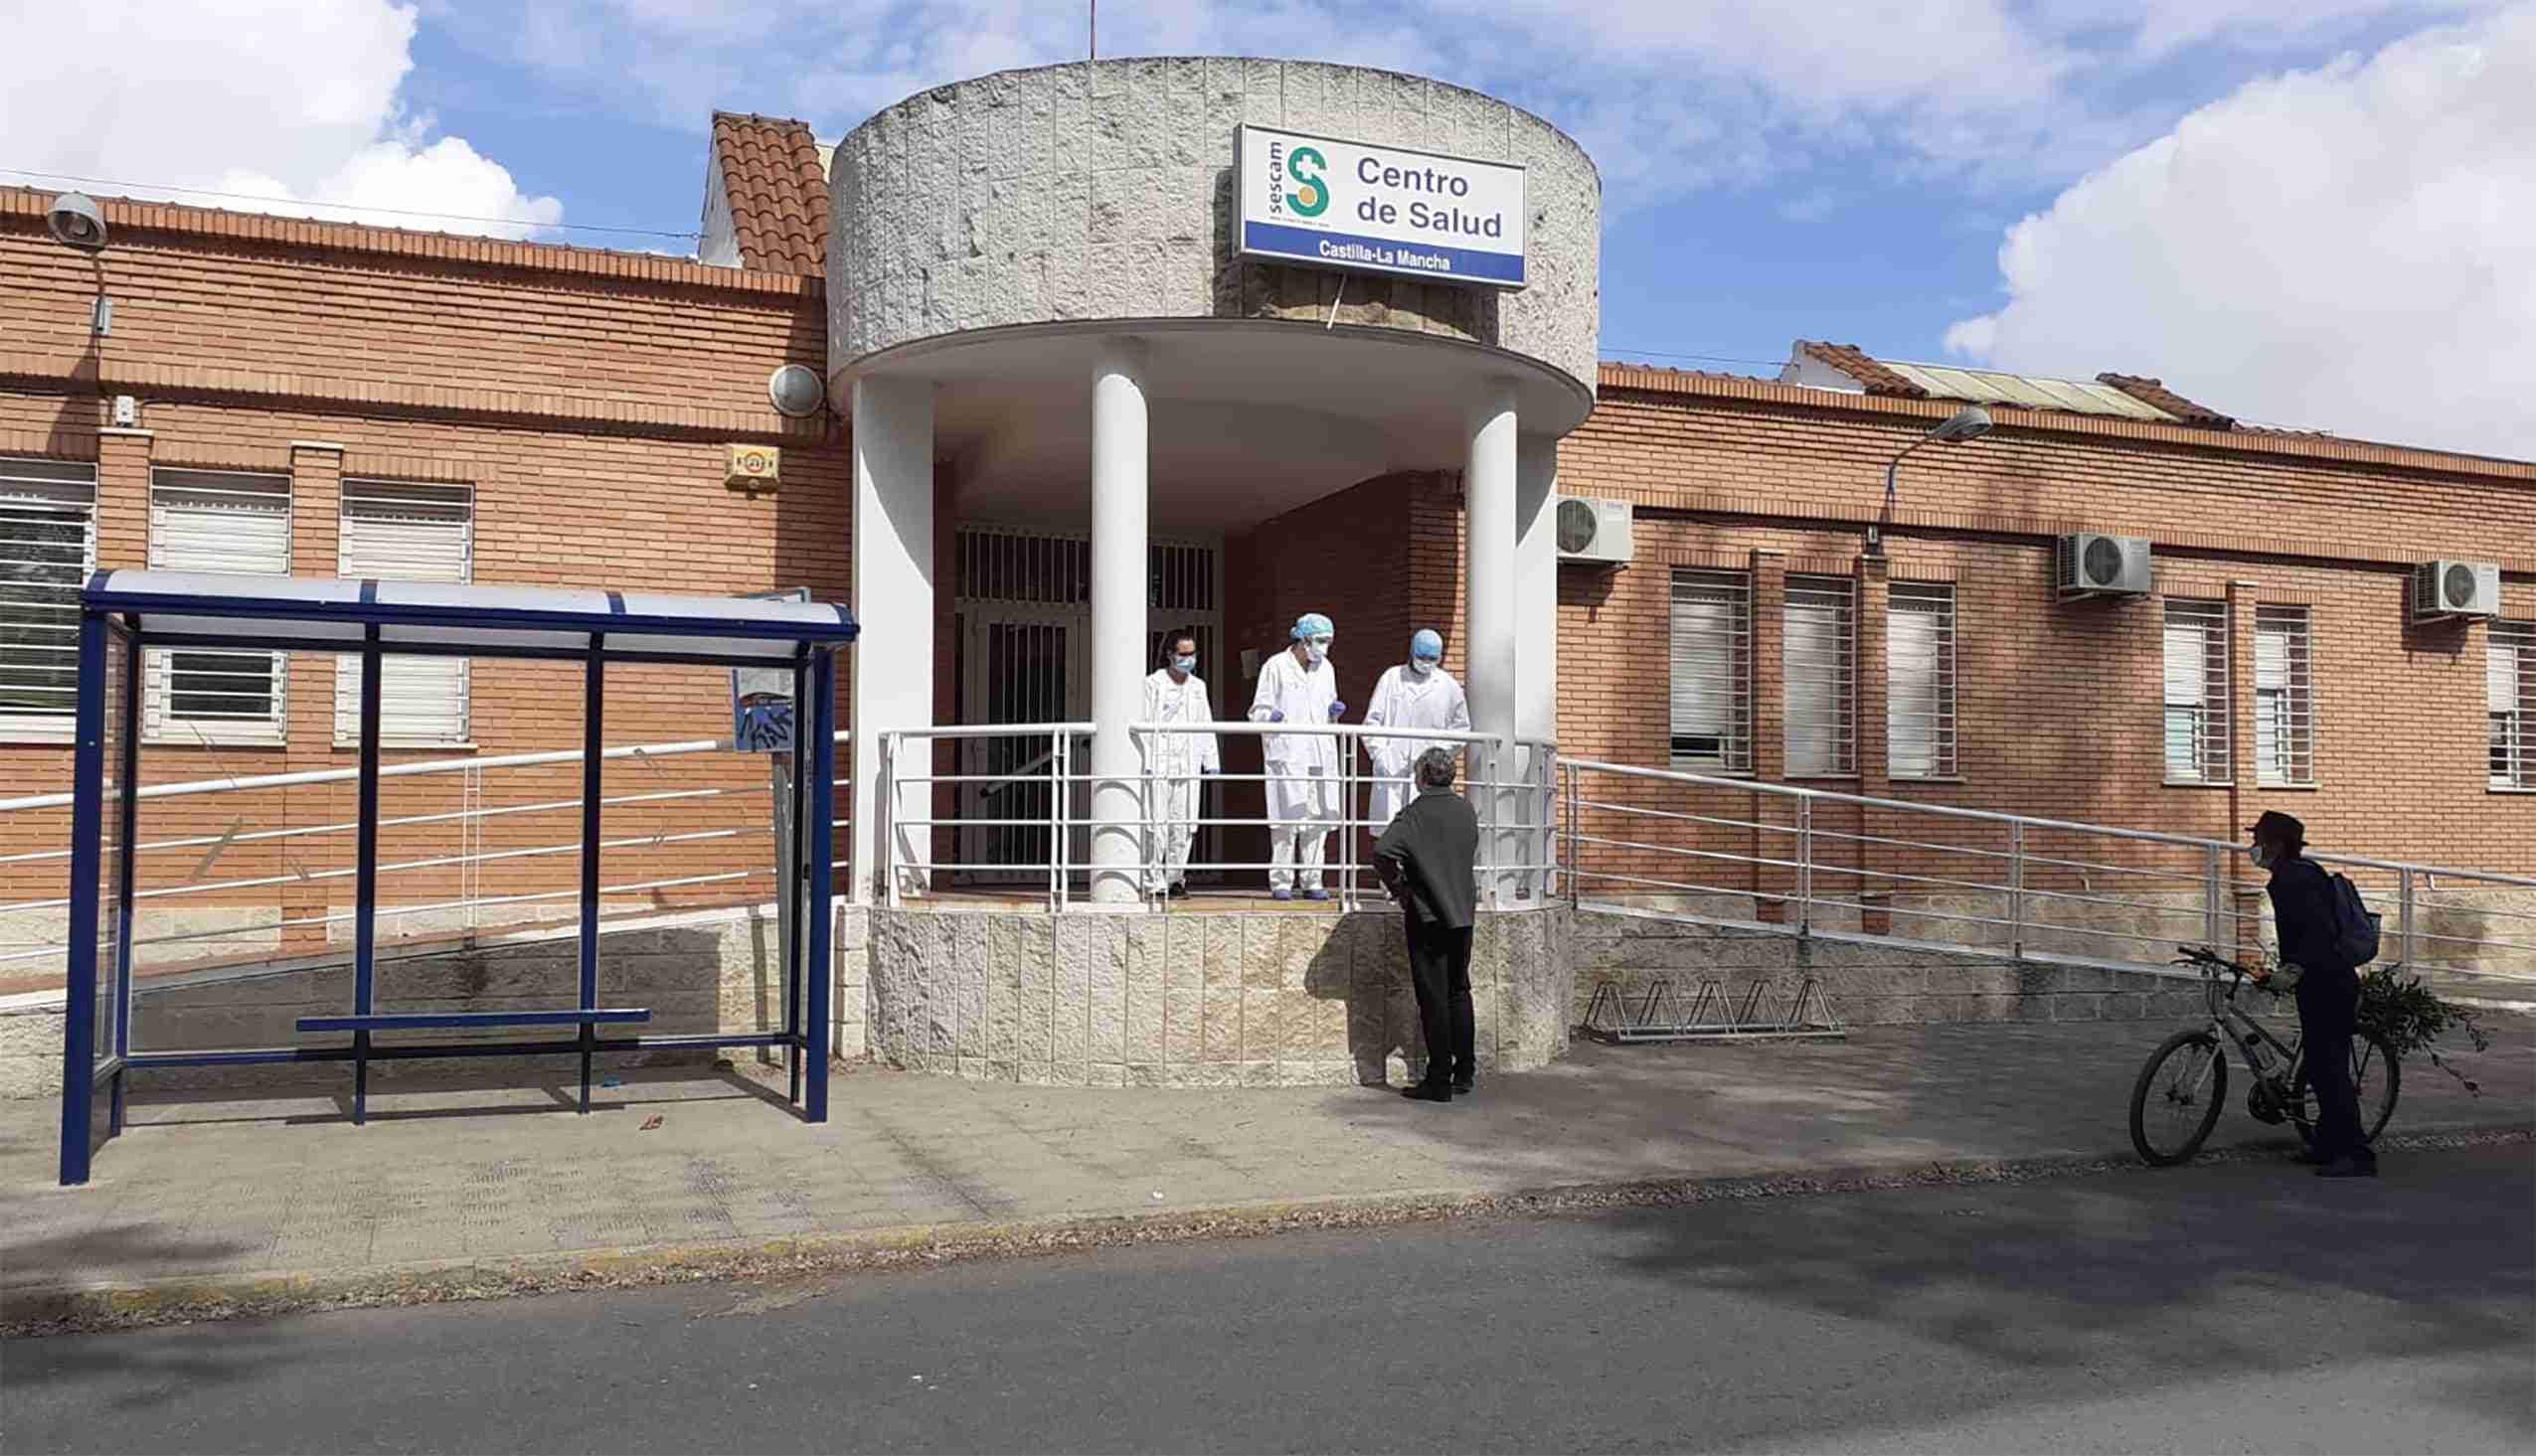 Centro de Salud Tomelloso 2 reabre hoy sus puertas para reforzar la atención sanitaria a los pacientes con coronavirus 1